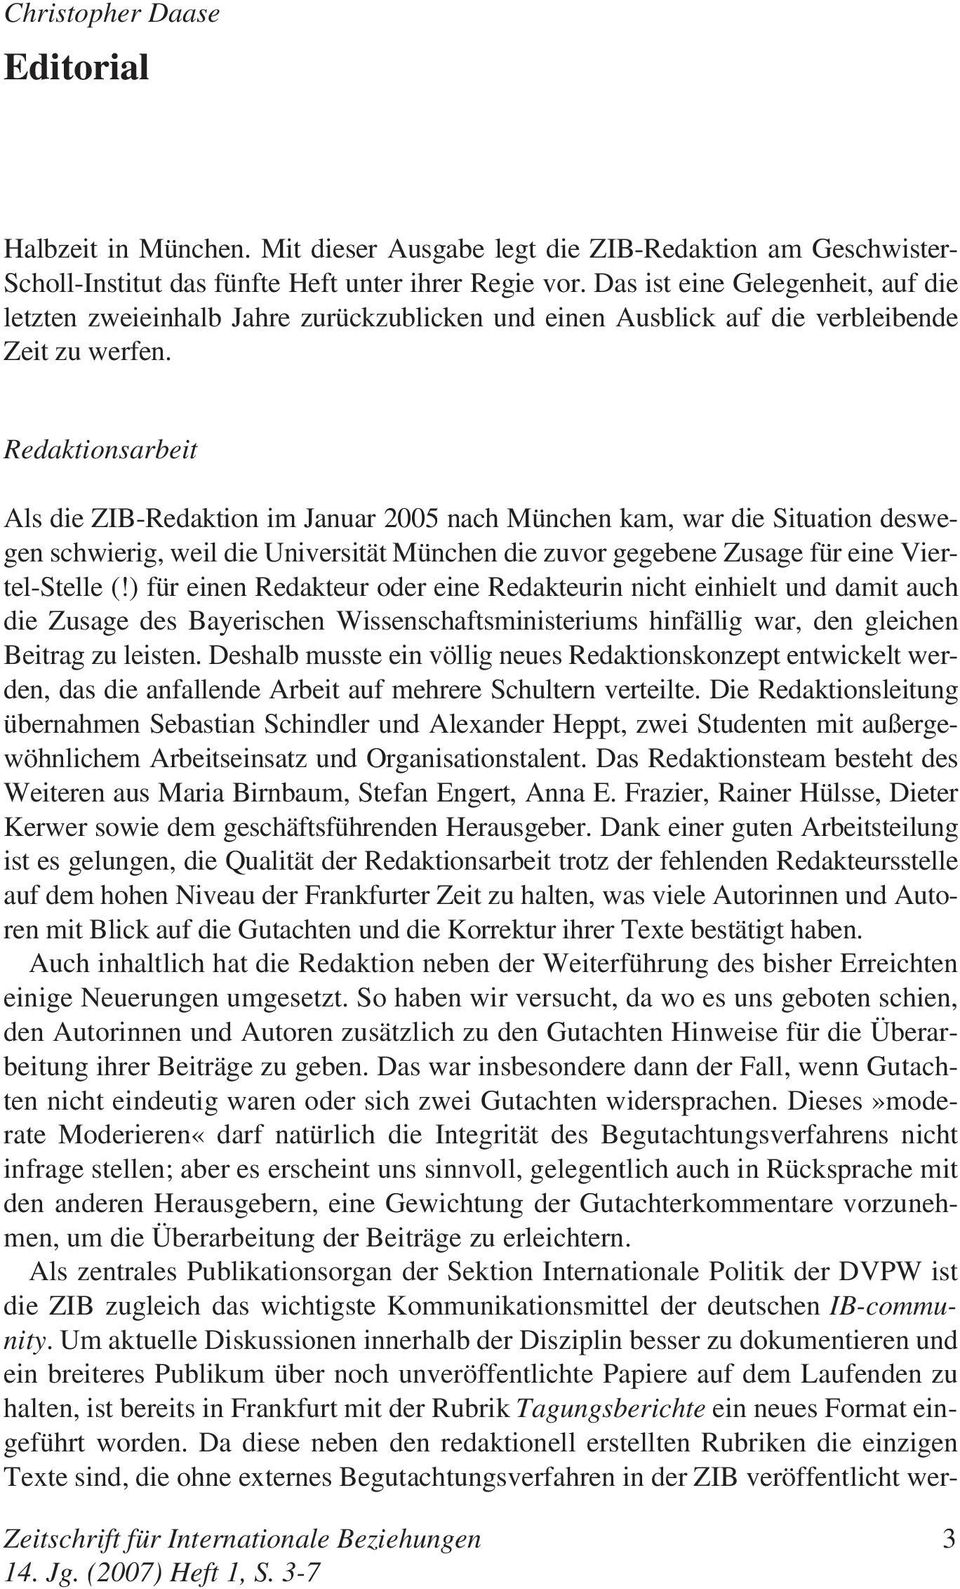 Redaktionsarbeit Als die ZIB-Redaktion im Januar 2005 nach München kam, war die Situation deswegen schwierig, weil die Universität München die zuvor gegebene Zusage für eine Viertel-Stelle (!